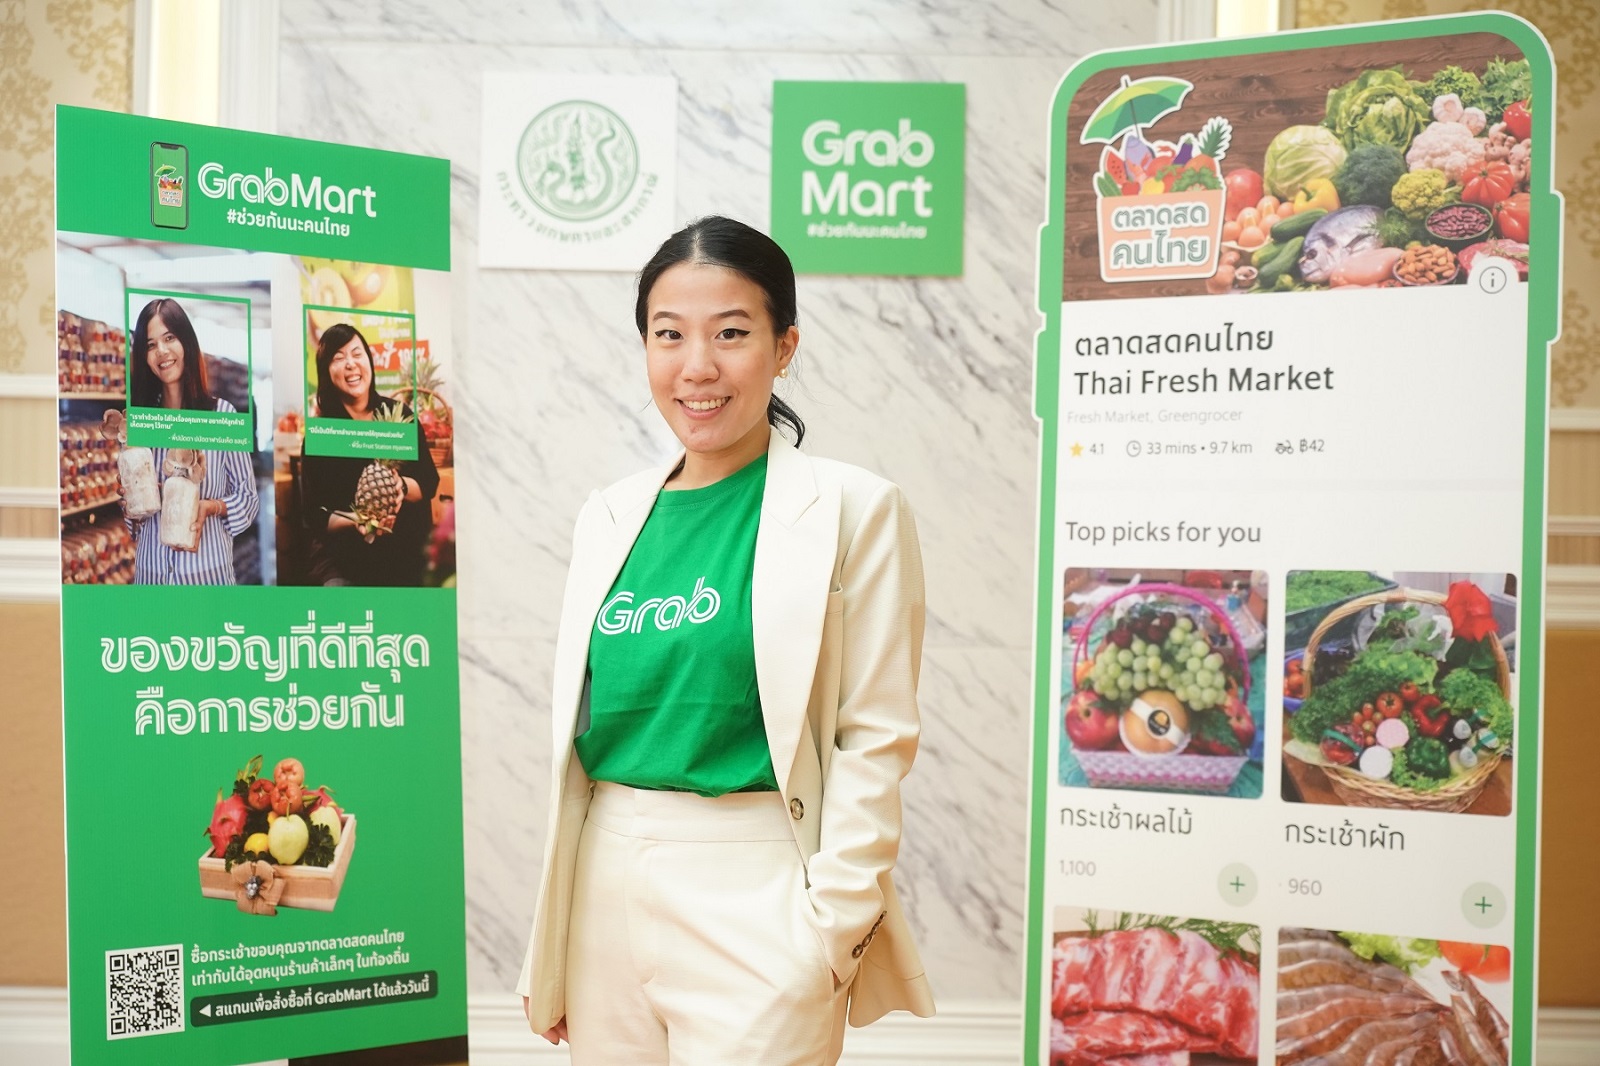 แกร็บ ประเทศไทย สานต่อความร่วมมือกับกระทรวงเกษตรและสหกรณ์ เปิดตัว 'ตลาดสดคนไทย' ผ่าน GrabMart สนับสนุนผลผลิตจากผู้ประกอบการไทย